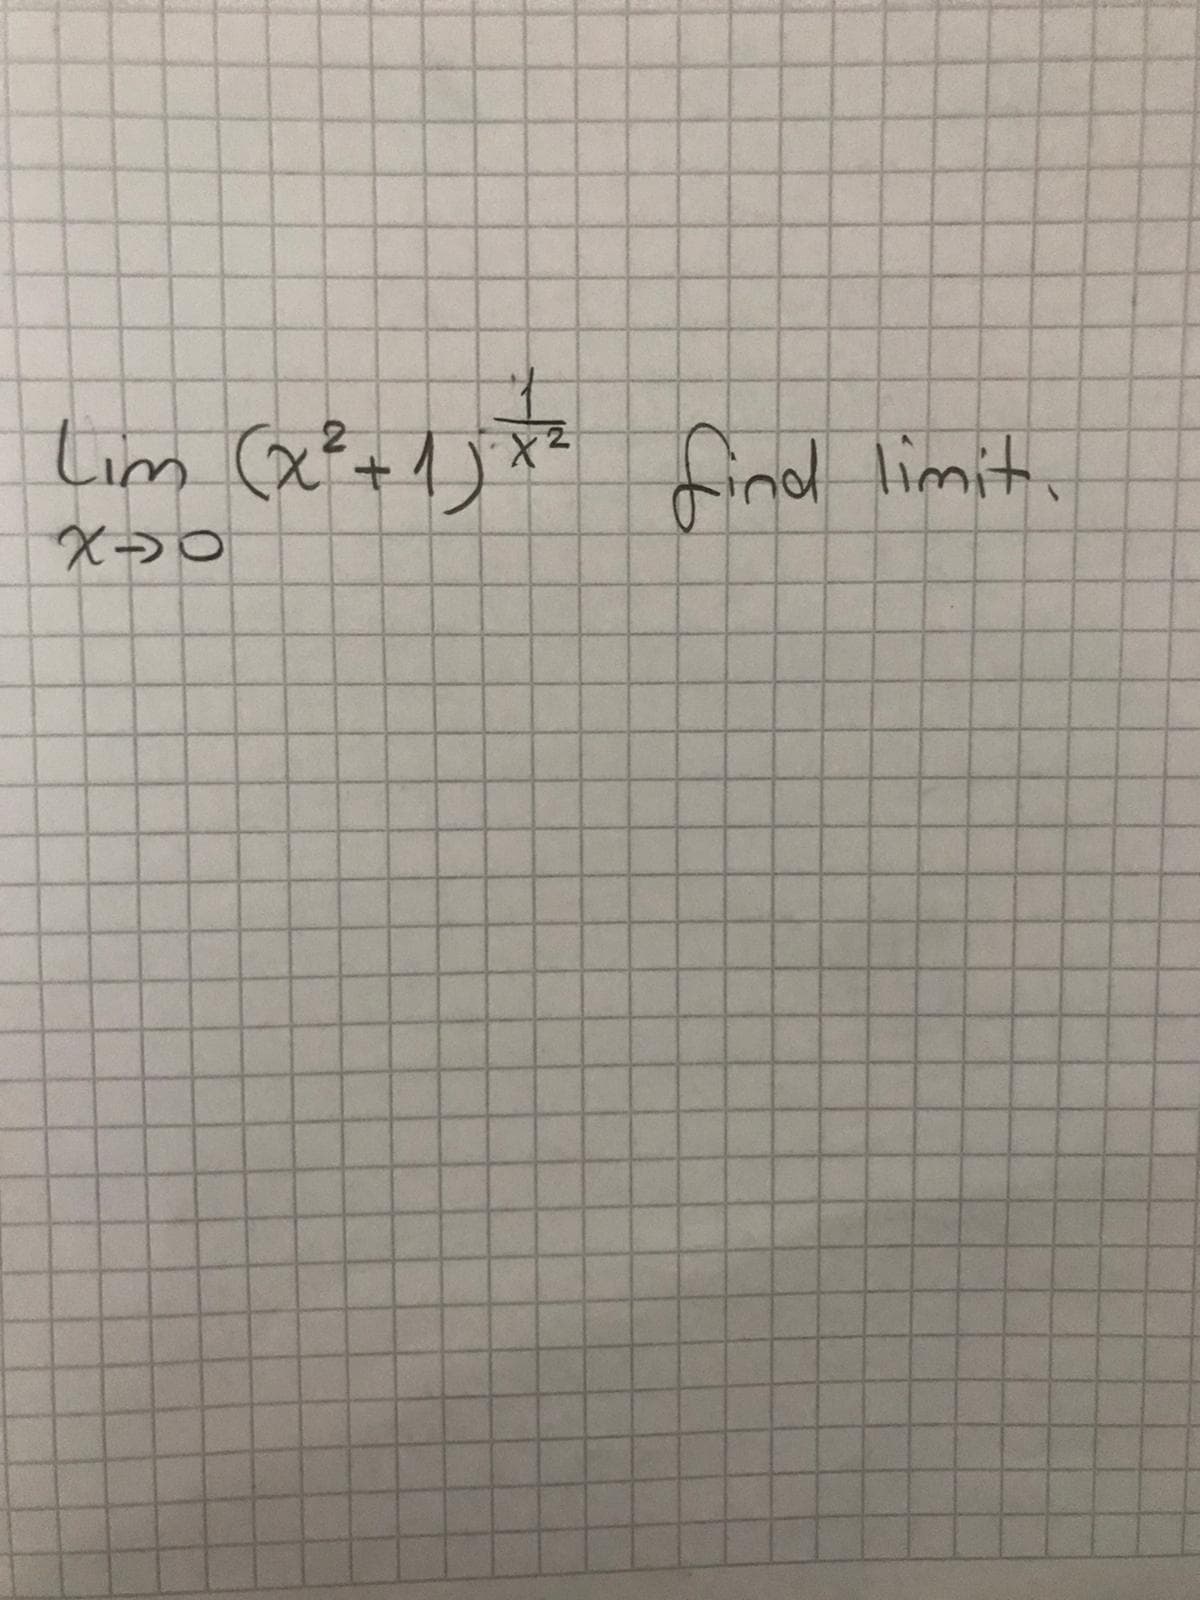 Lim (x? +1) x find limit
レ
